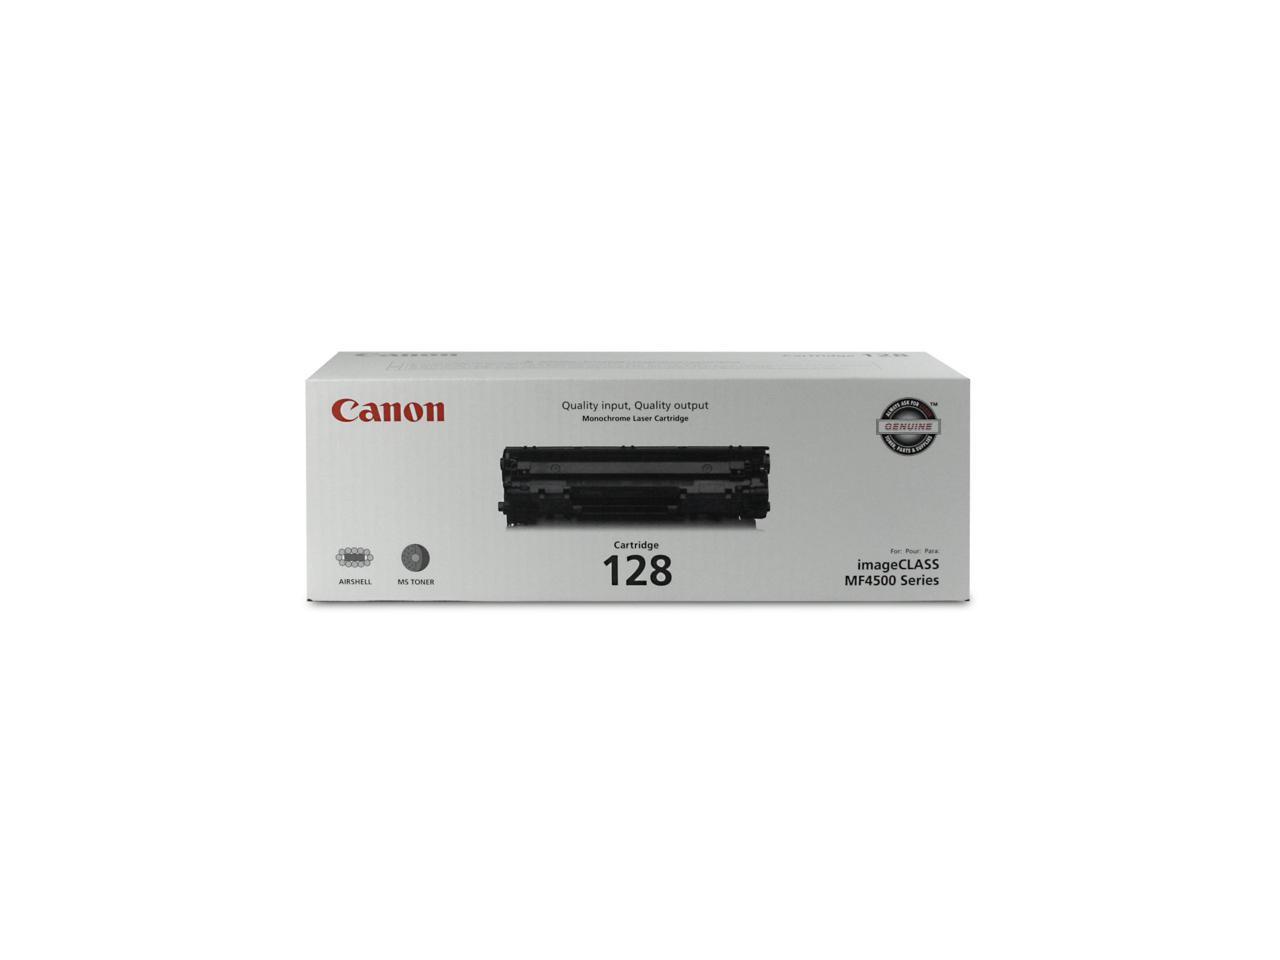 Canon 3500B001 Toner Cartridge - Black